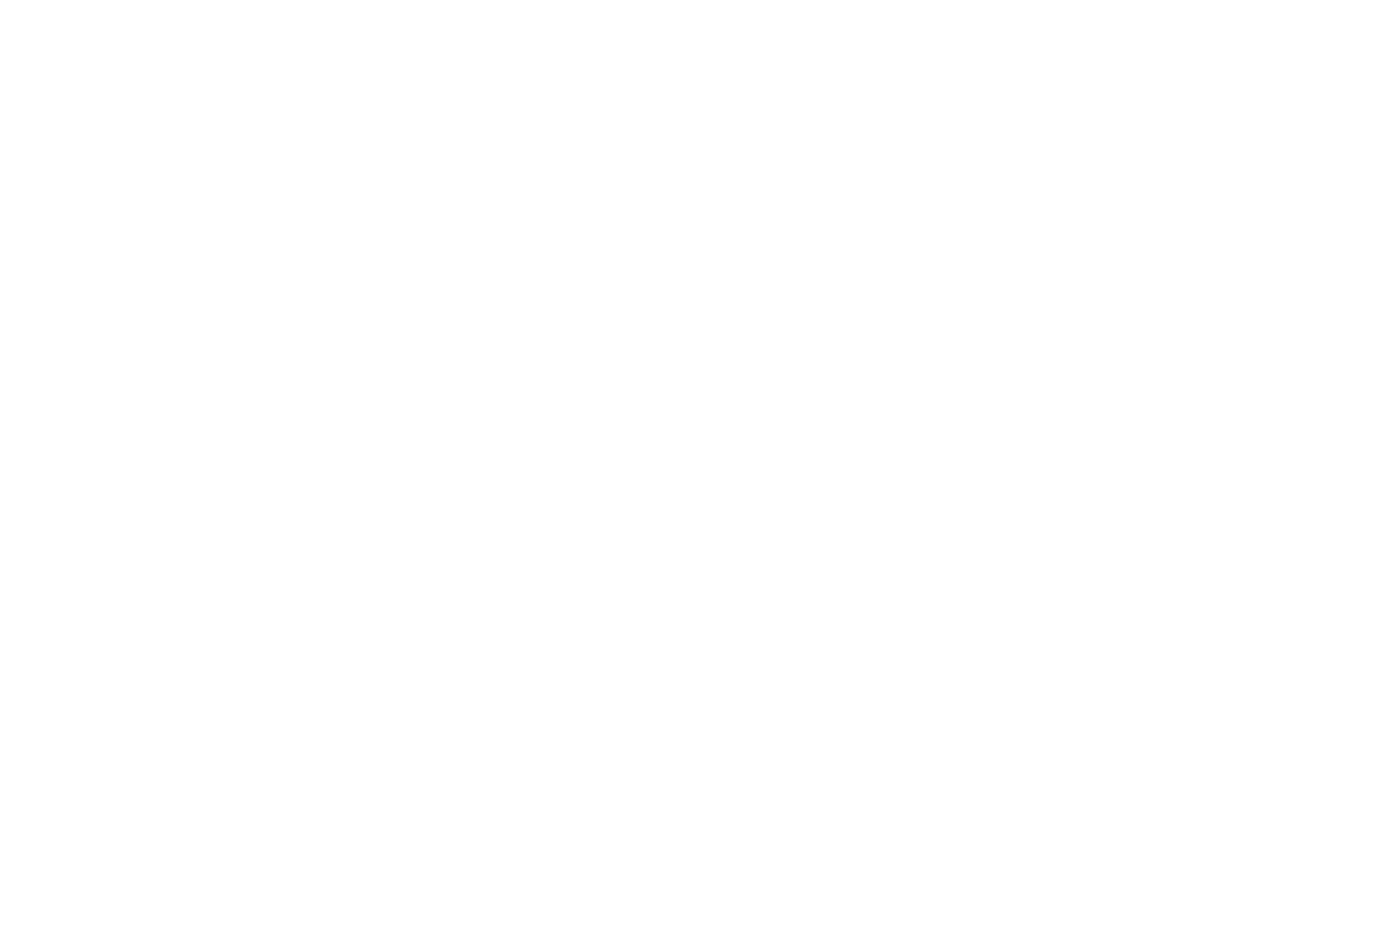 Bunny dining